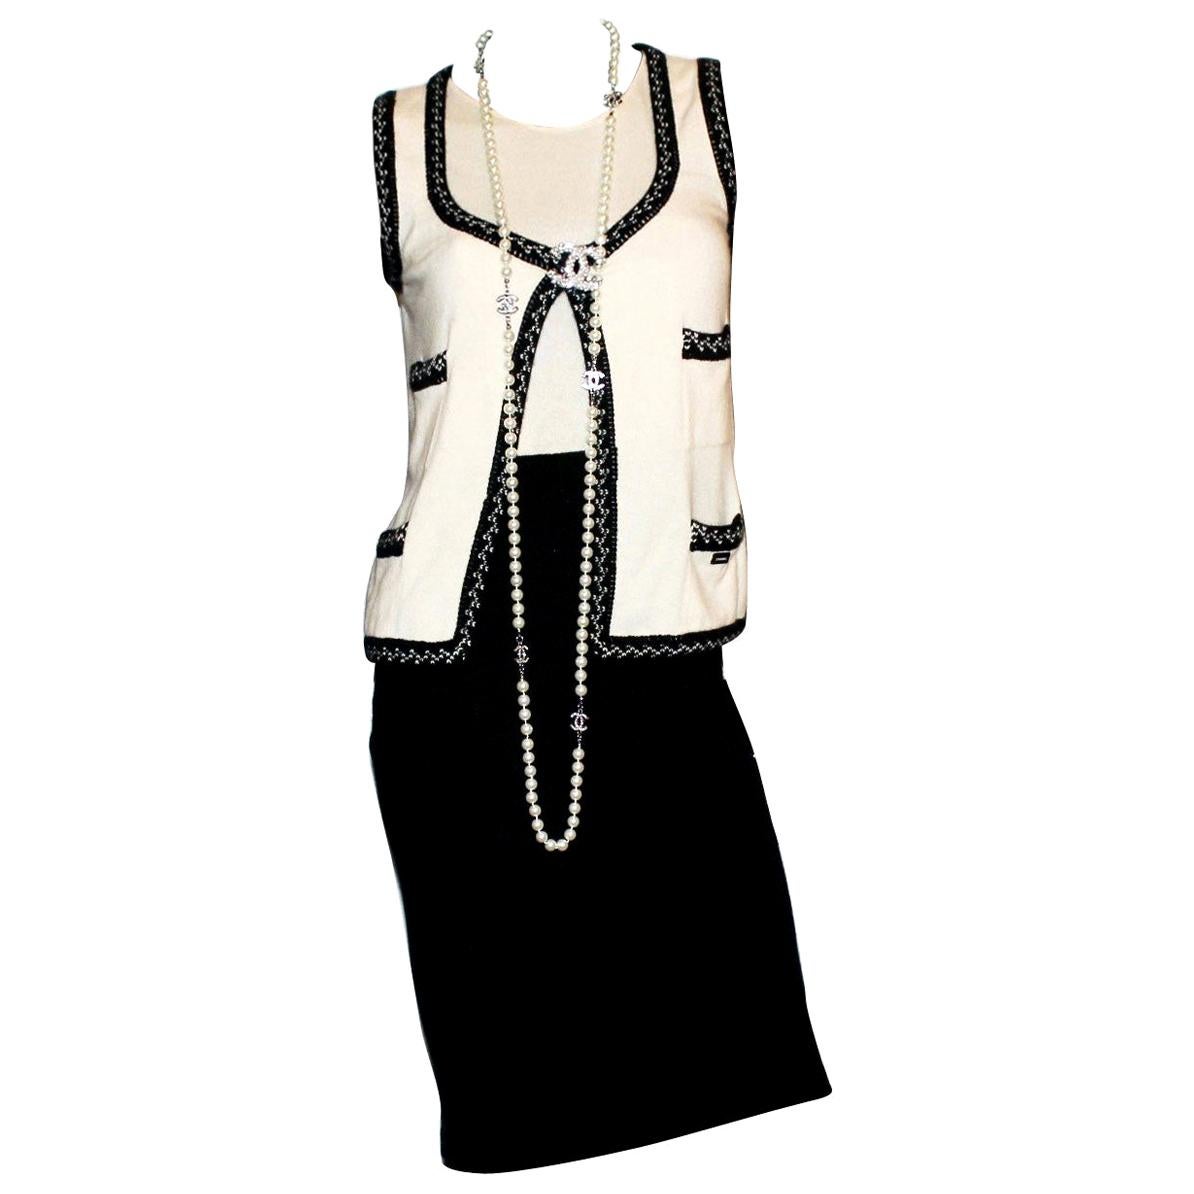 Stunning Monochrome Chanel Cashmere Signature Dress Gilet Suit Set Ensemble